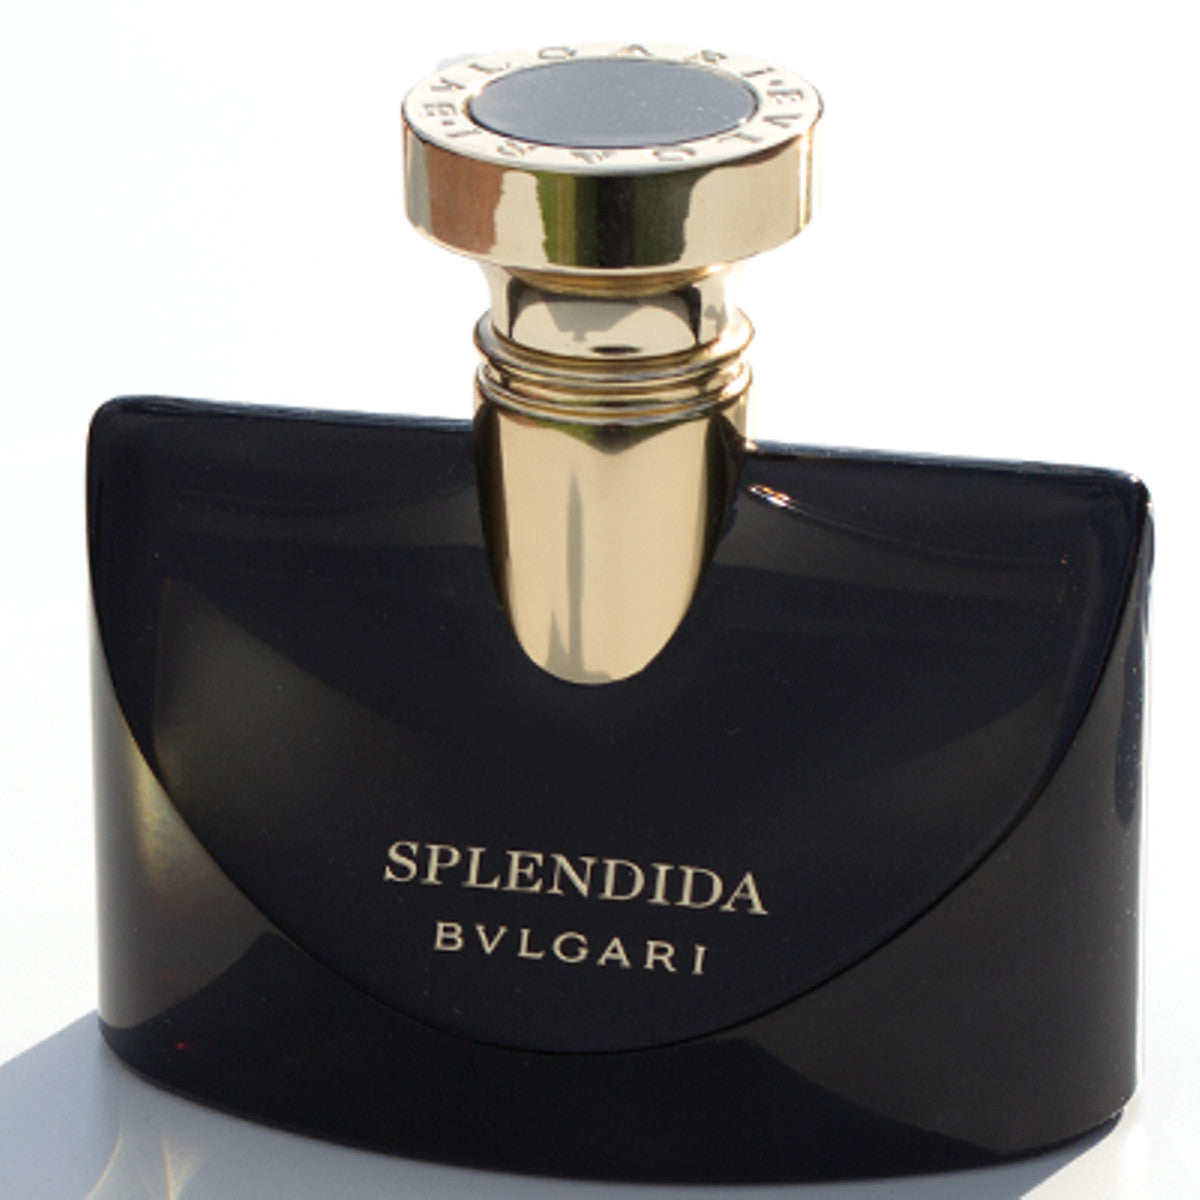 splendida bvlgari parfum